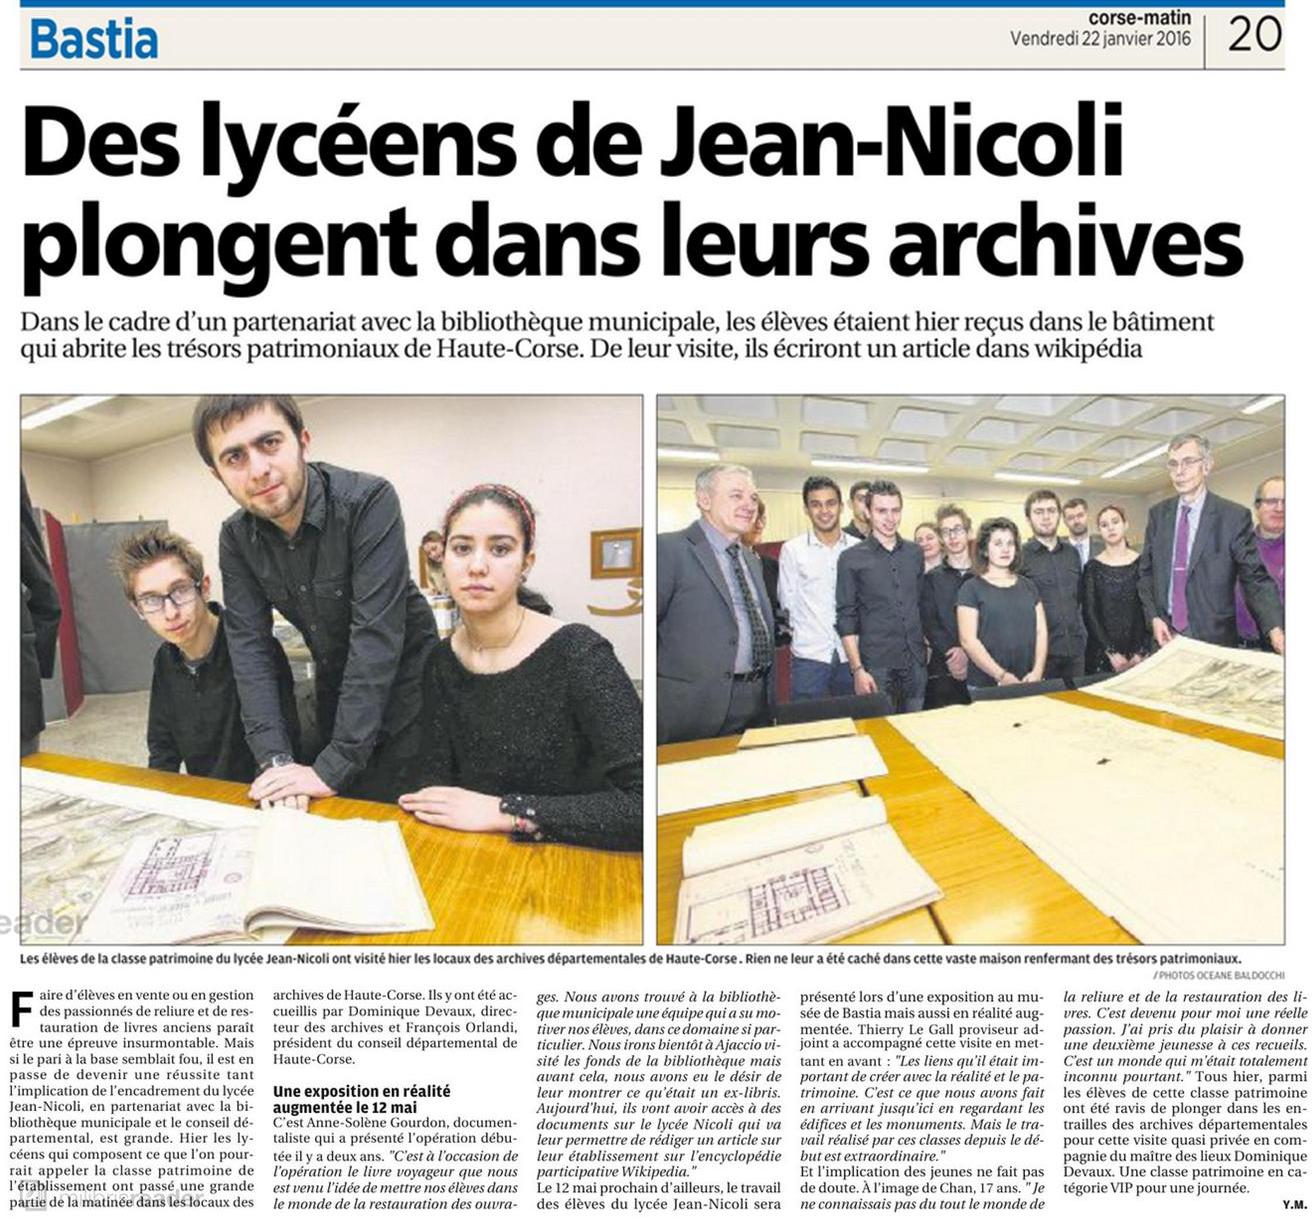 Les lycéens de Jean Nicoli visitent les archives départementales en VIP